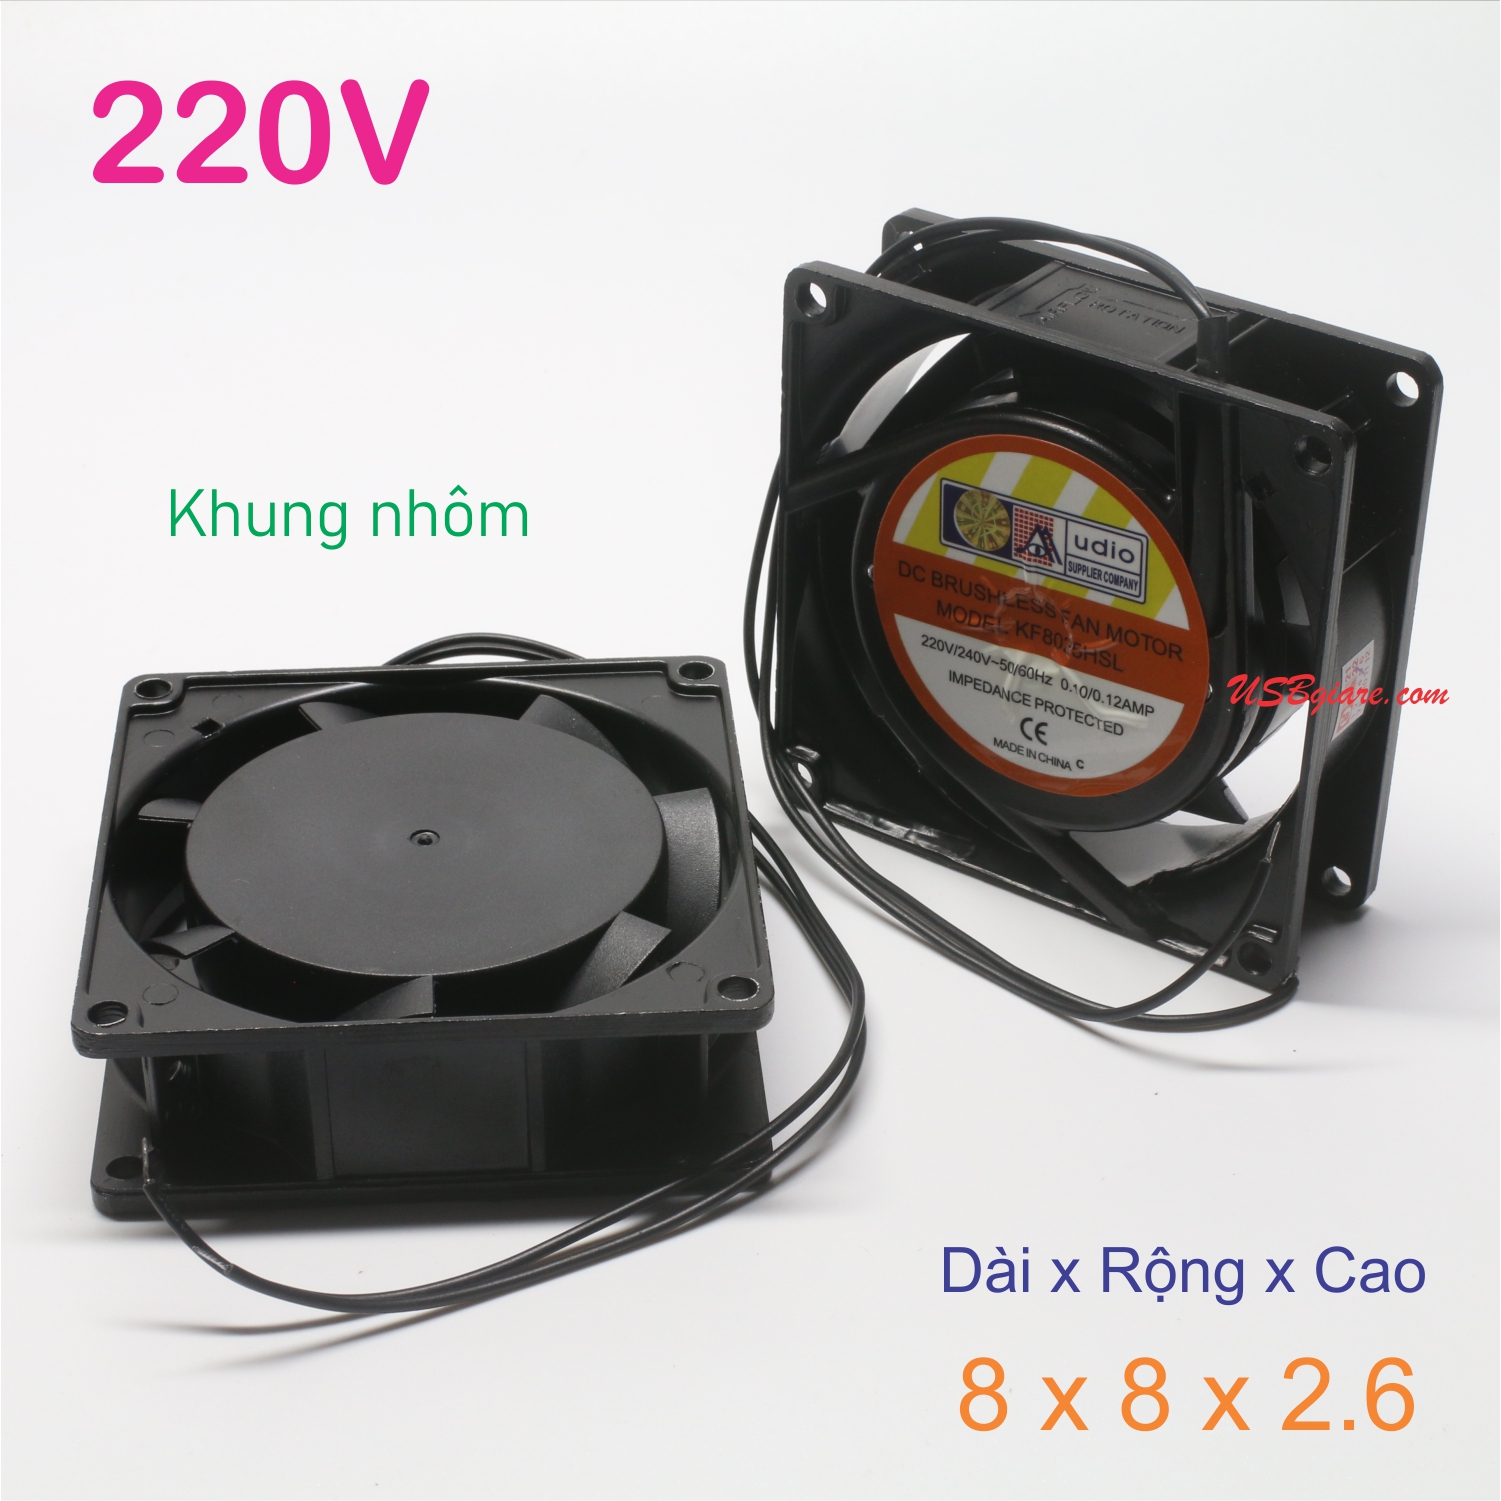 Quạt tản nhiệt 220V 8x8x2.6cm, Fan 220V 8x8x2.6cm (khung nhôm)【USBgiare,Com】